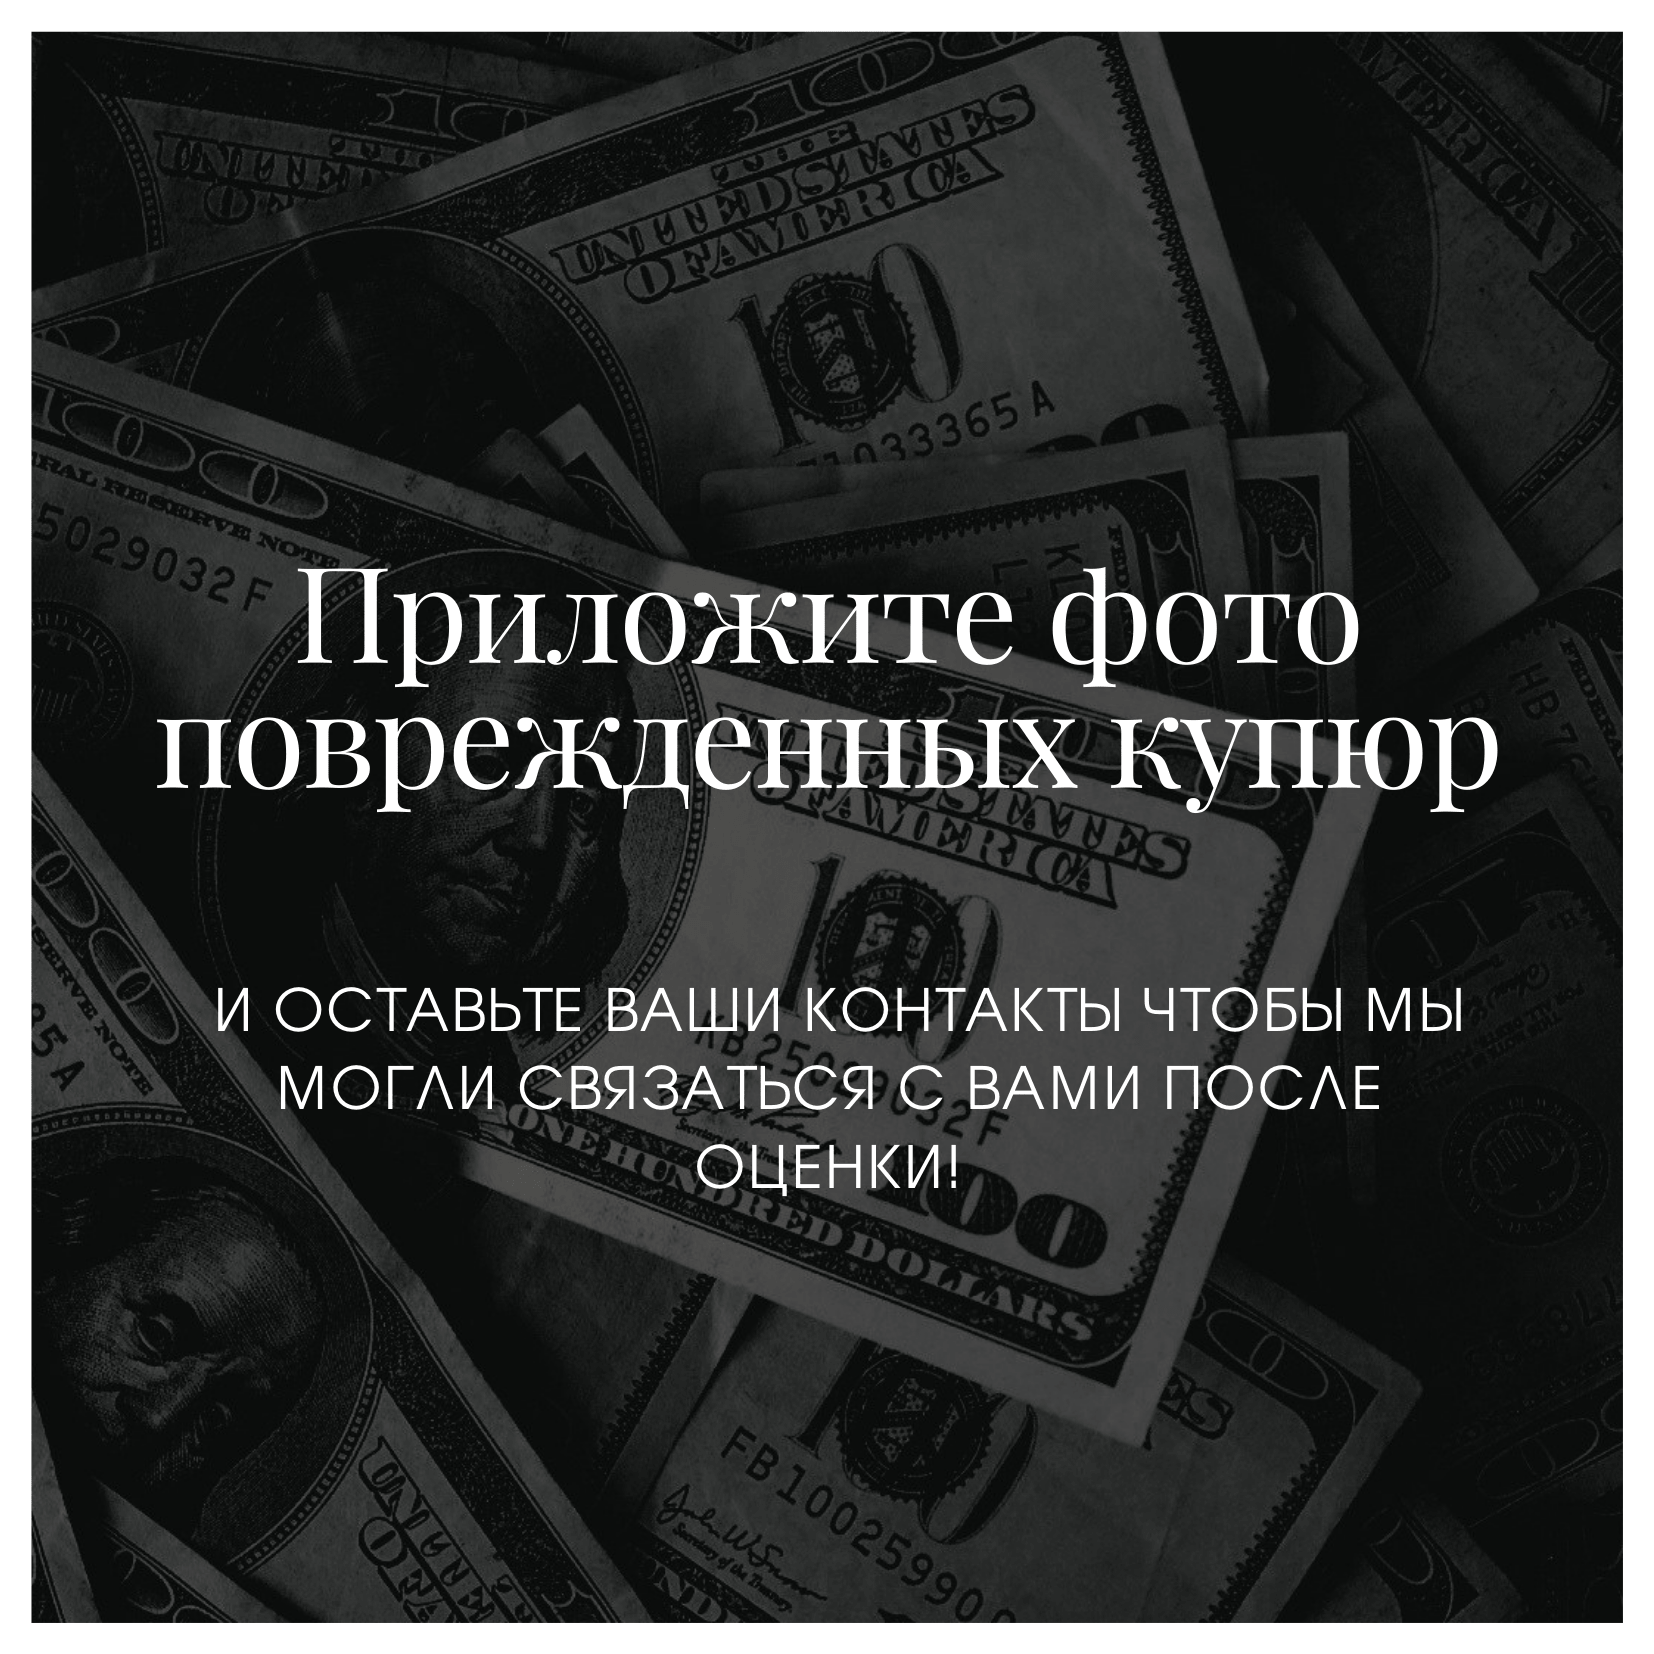 Обмен валюты в москве фунт как оплатить bitcoin через qiwi